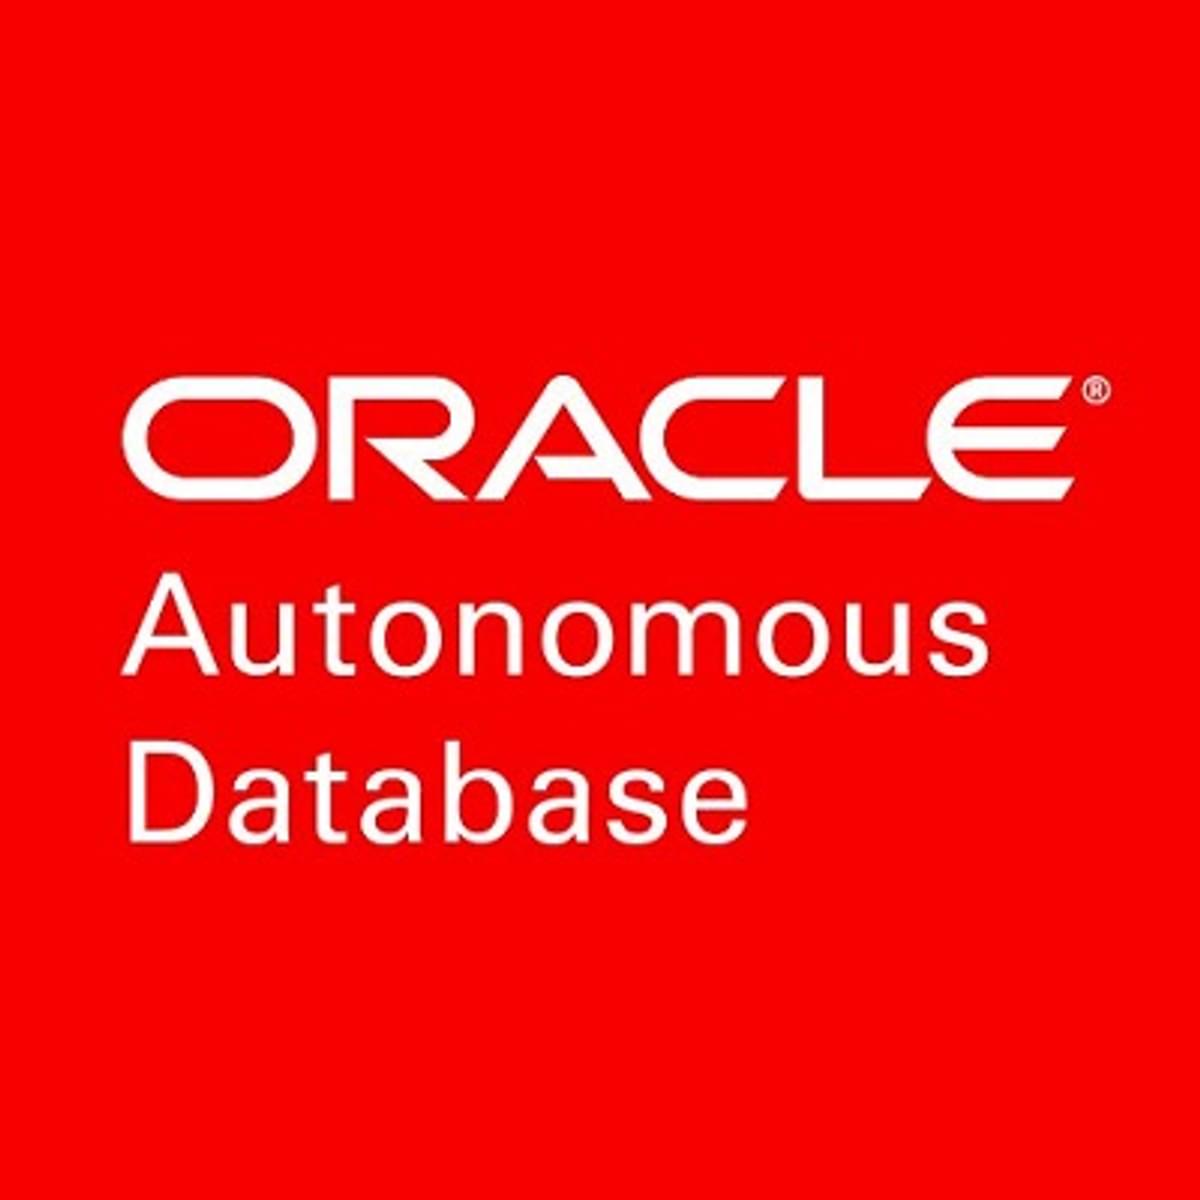 Oracle Autonomous Database Dedicated service is beschikbaar image